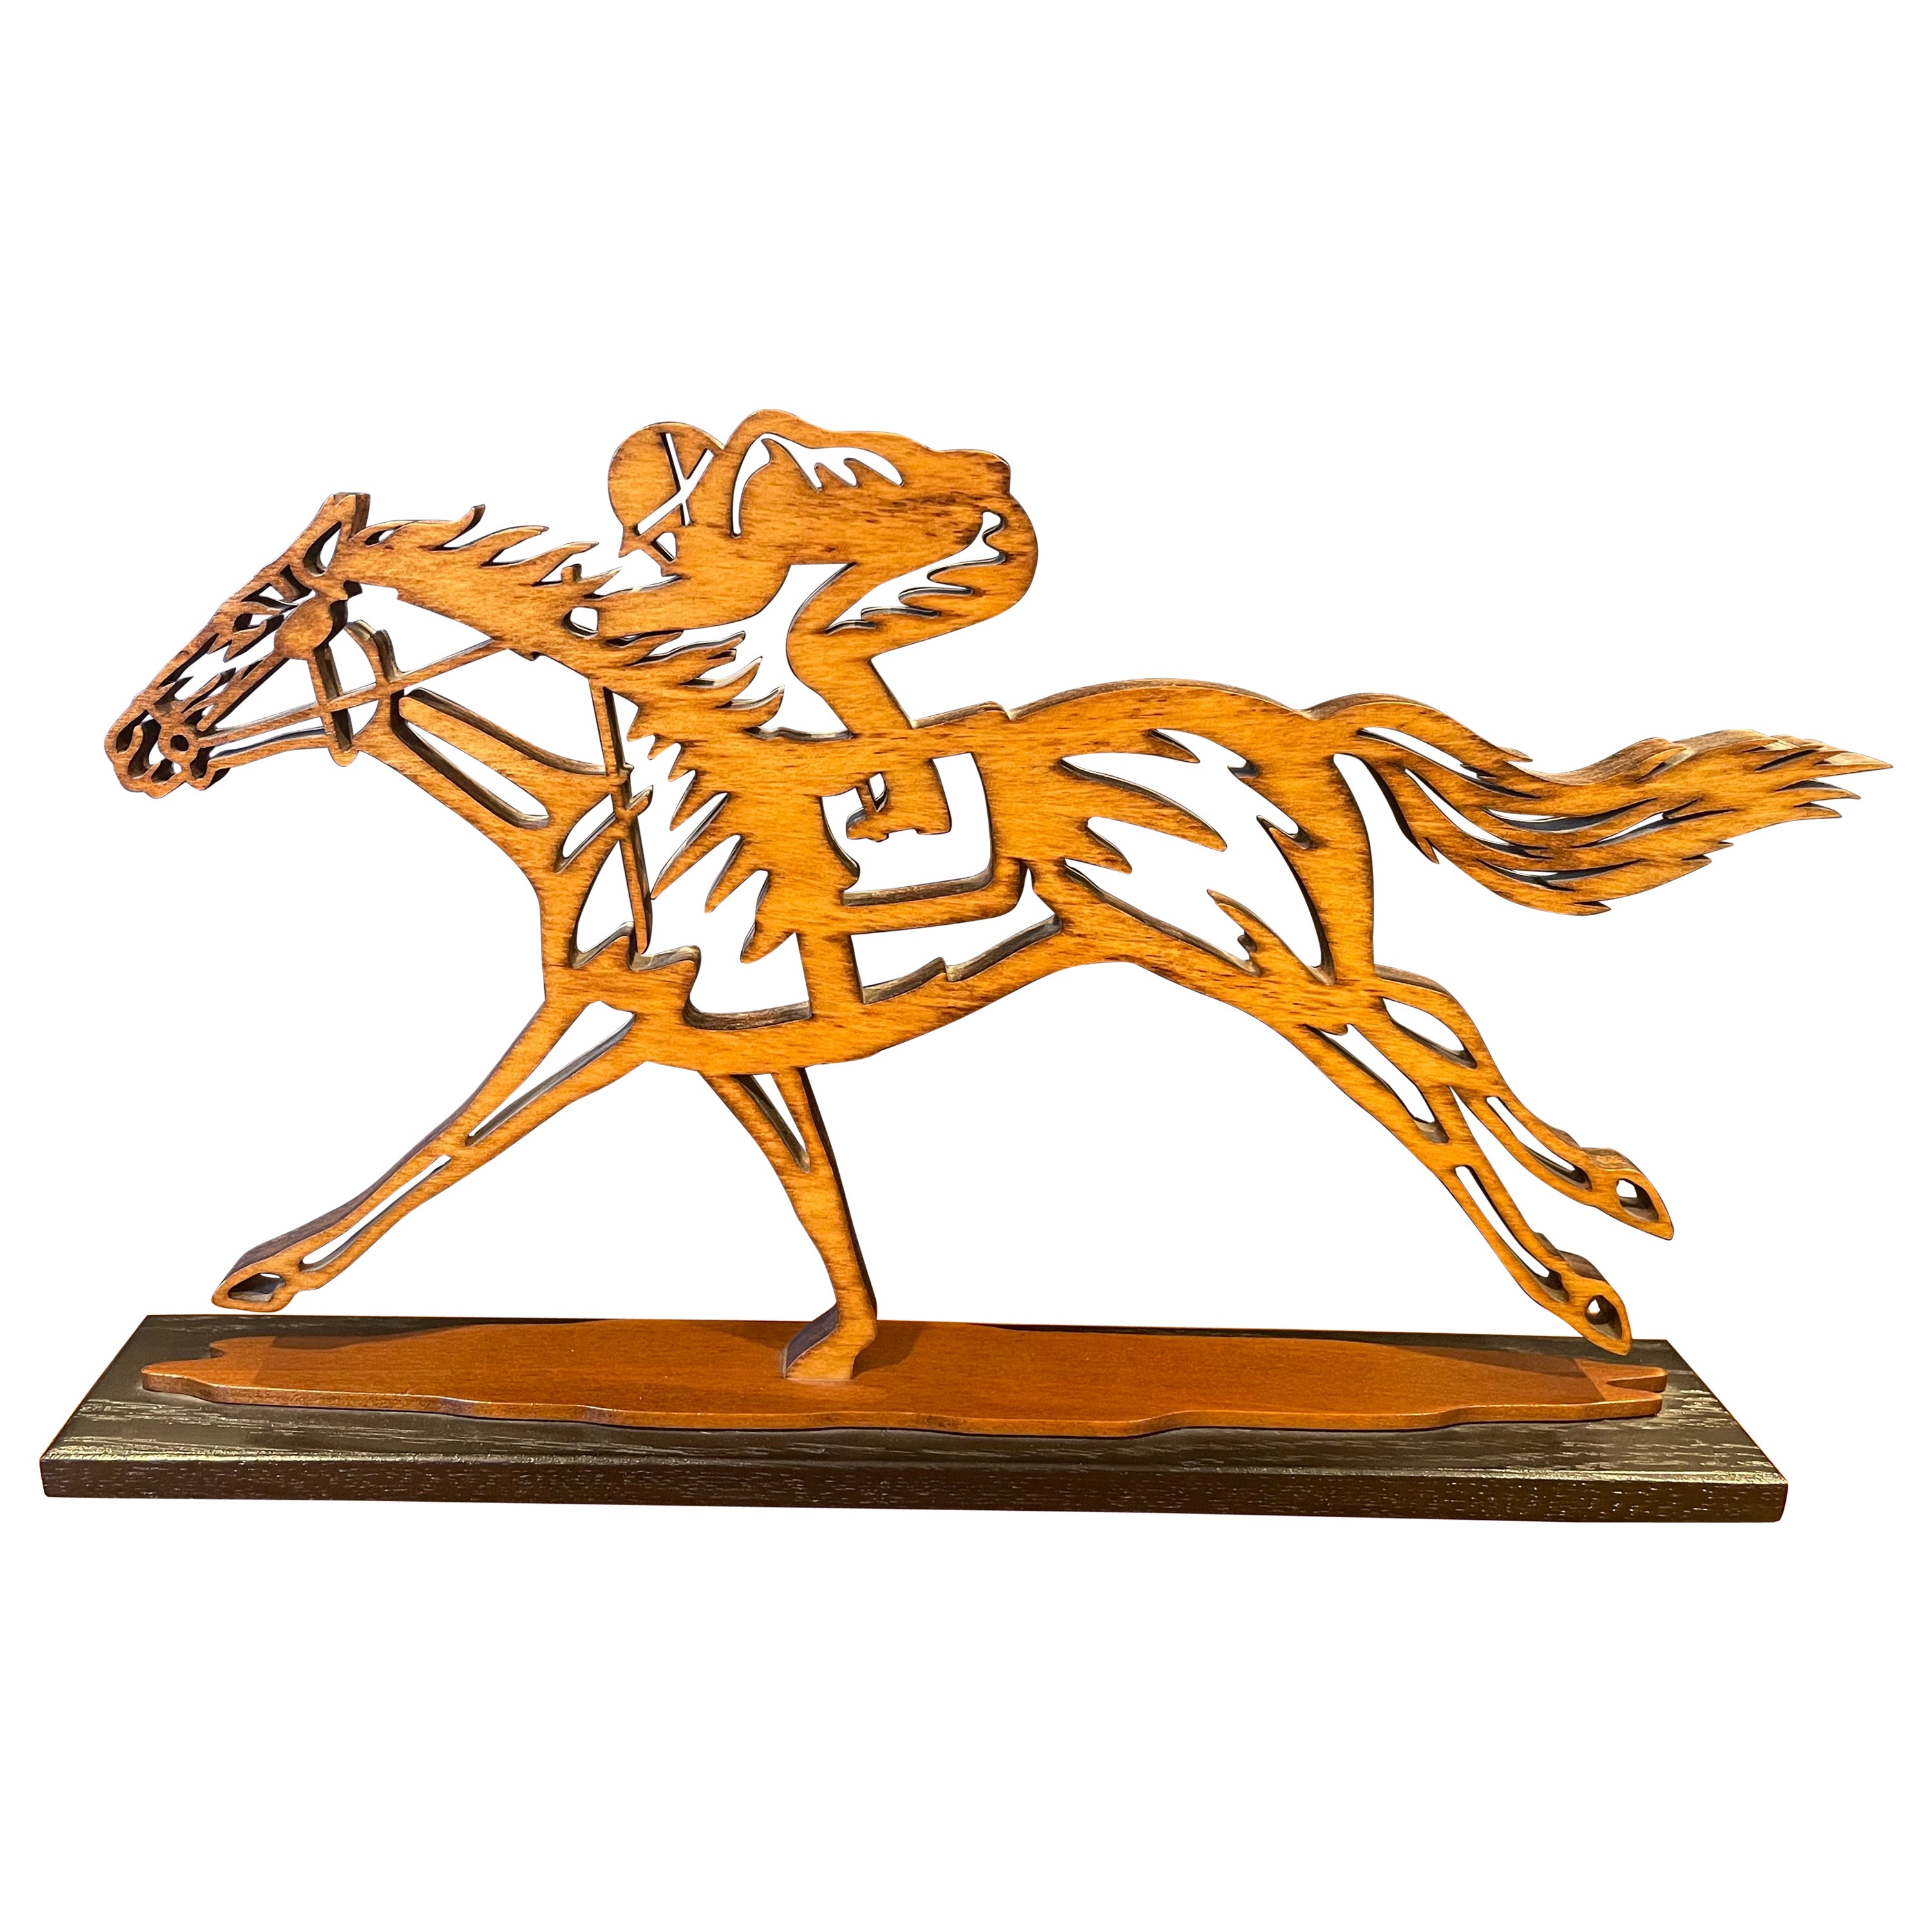 Pferderennen-Holz-Skulptur mit Vollblutpferden